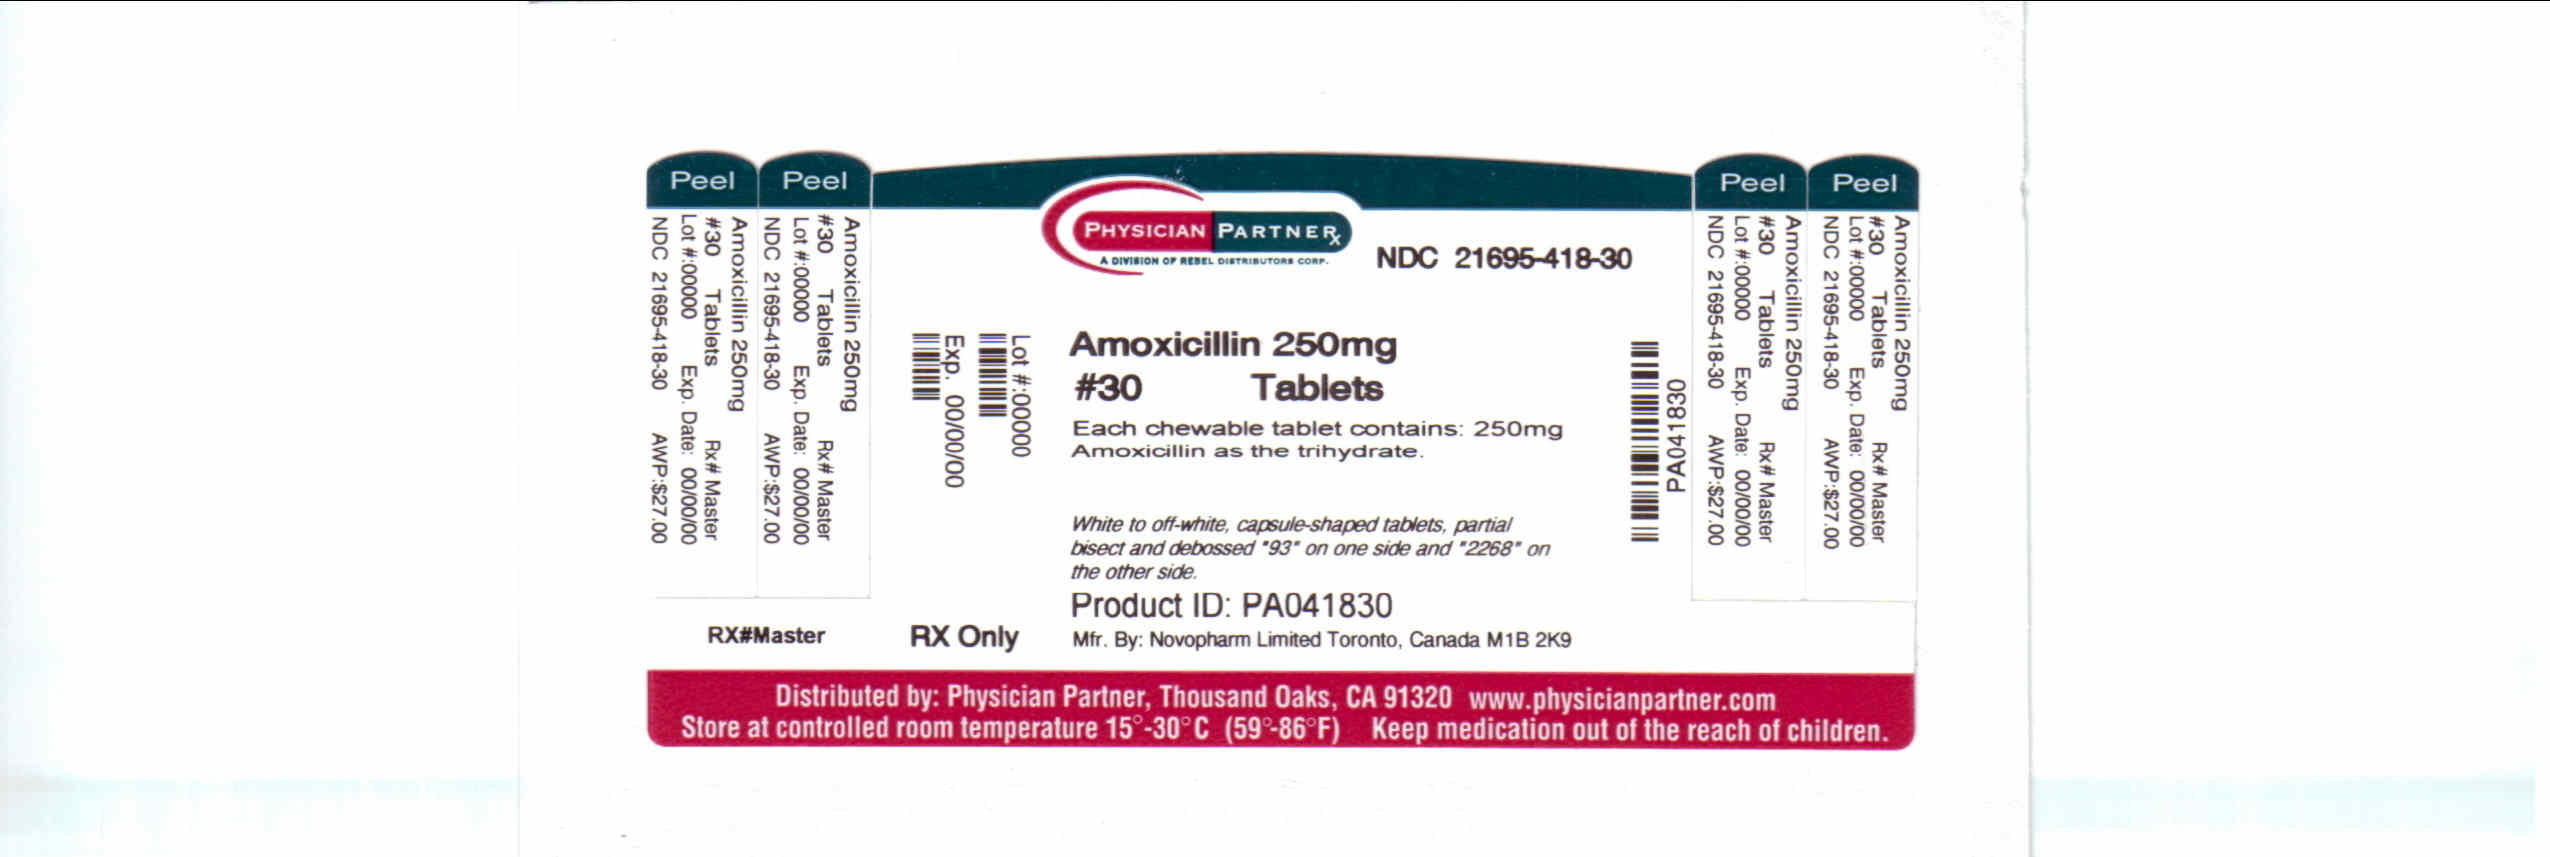 Amoxicillin 250mg